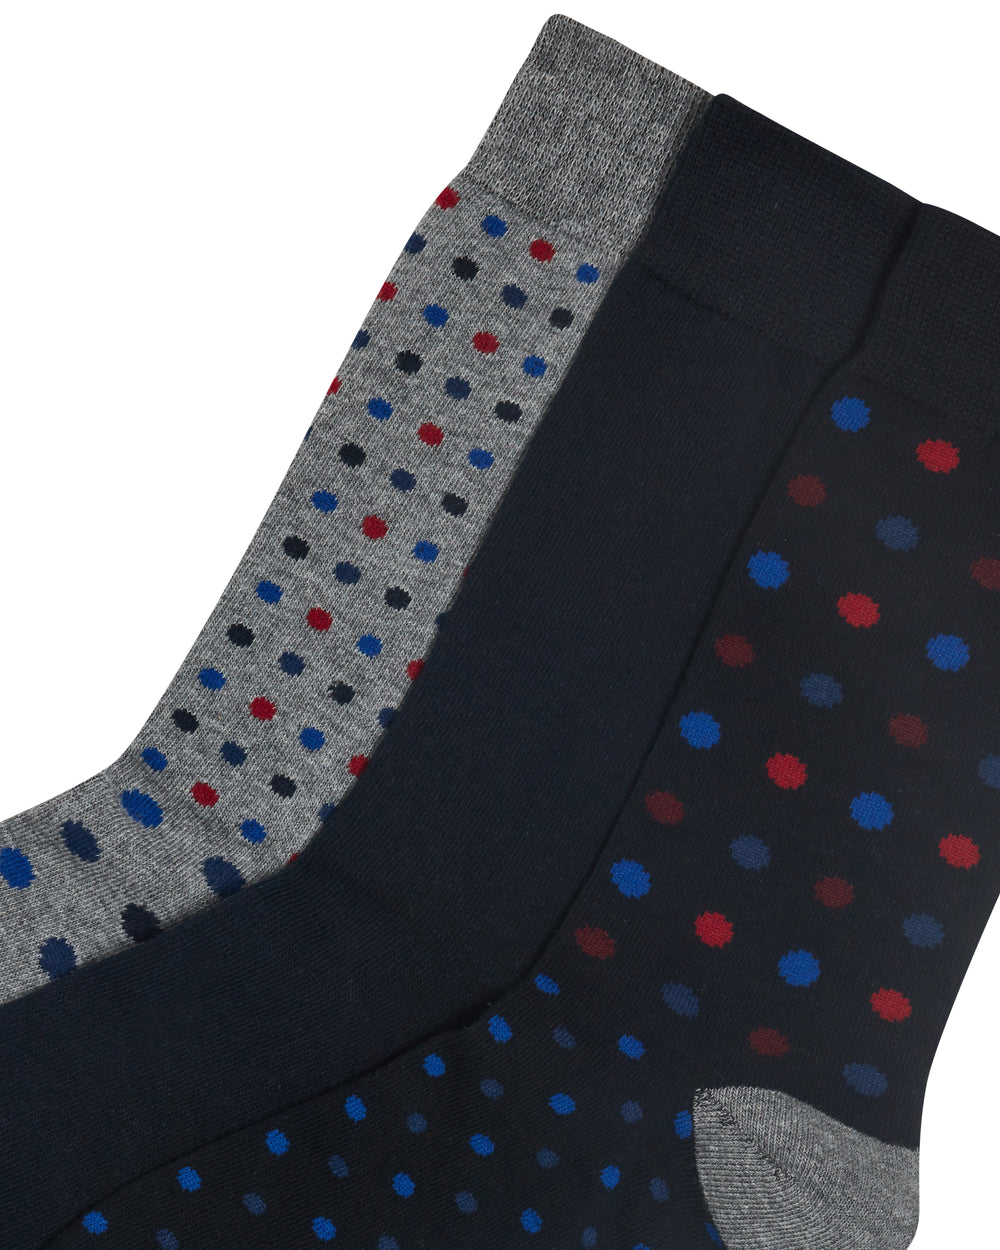 Captain Cutt Men's Gift Socks 3-Pack - Navy/Grey/Multi